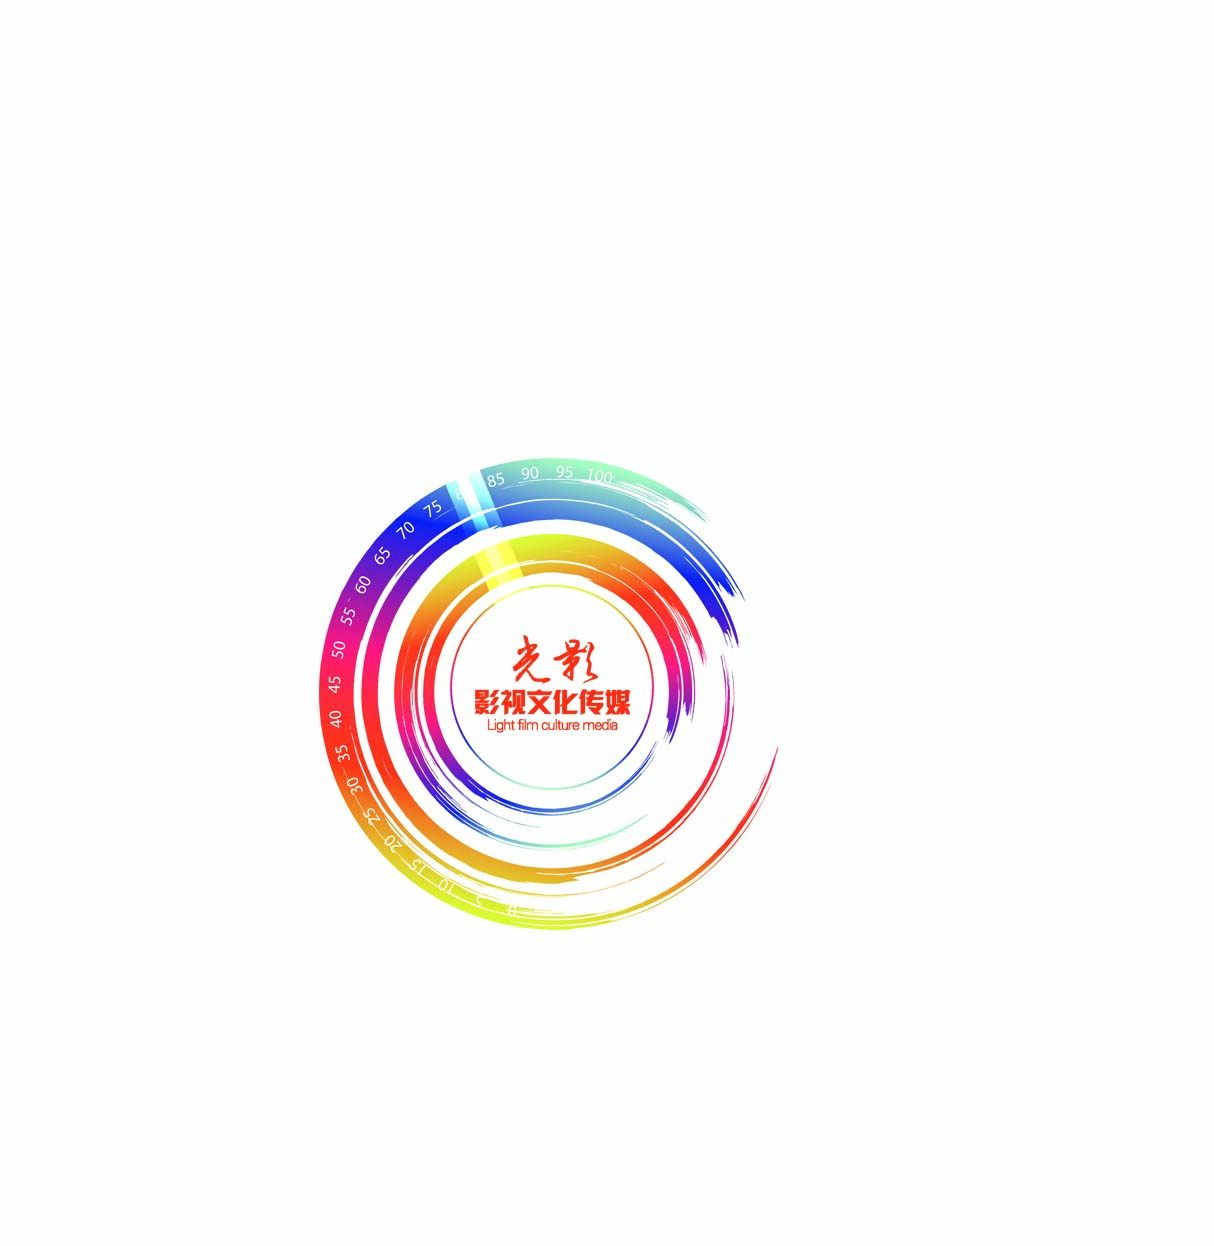 东莞市光影影视文化传媒有限公司logo